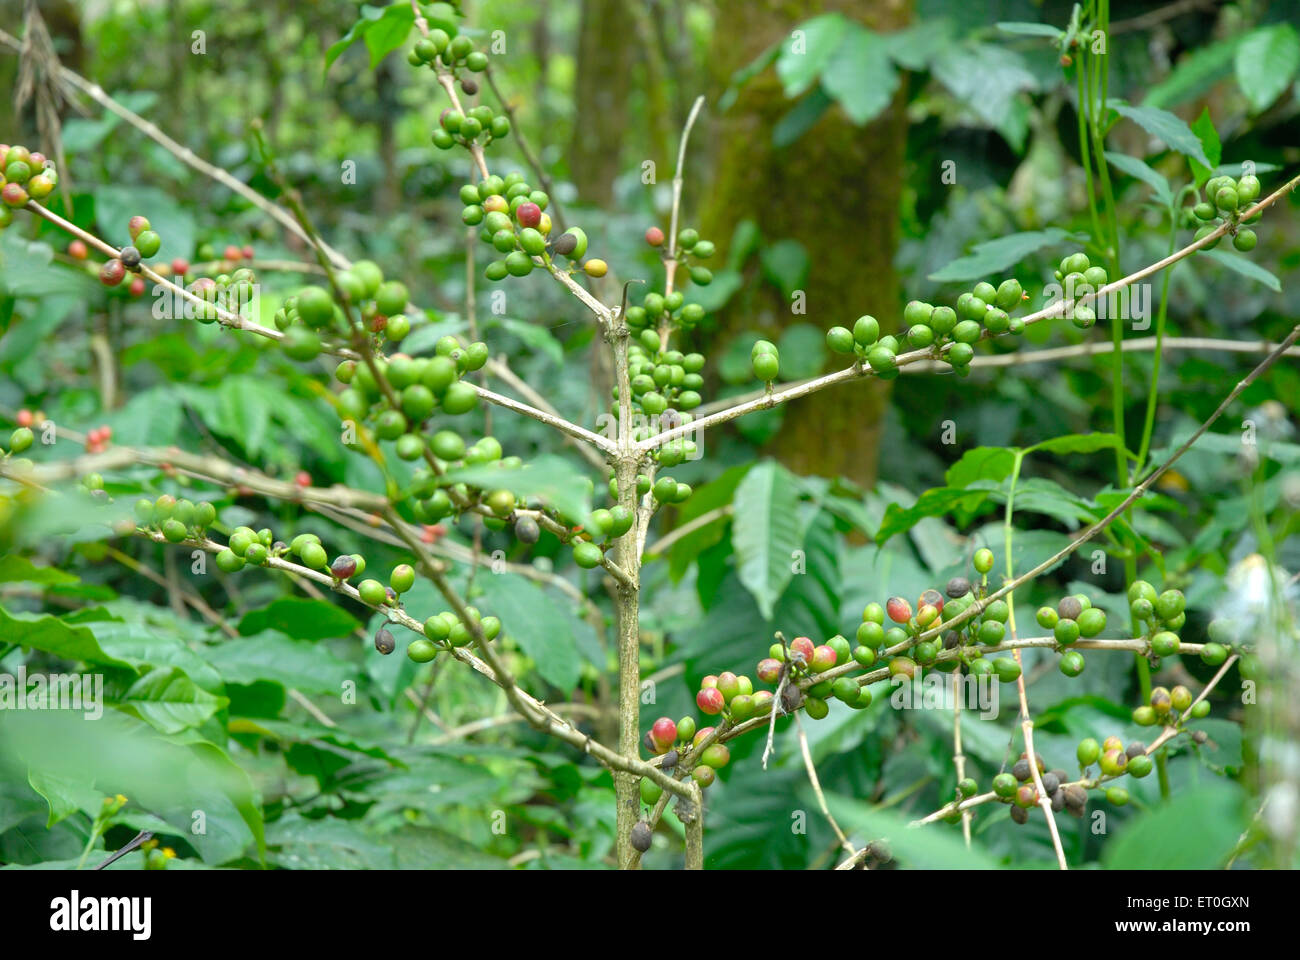 Kaffee Kirsche Baum, Kaffee Kirsche Baum, Kaffee Kirsche Baum, Kaffee Beerenbaum, Kaffee Beeren Baum, Madykeri, Madykery, Coorg, Karnataka, Indien, Asien Stockfoto